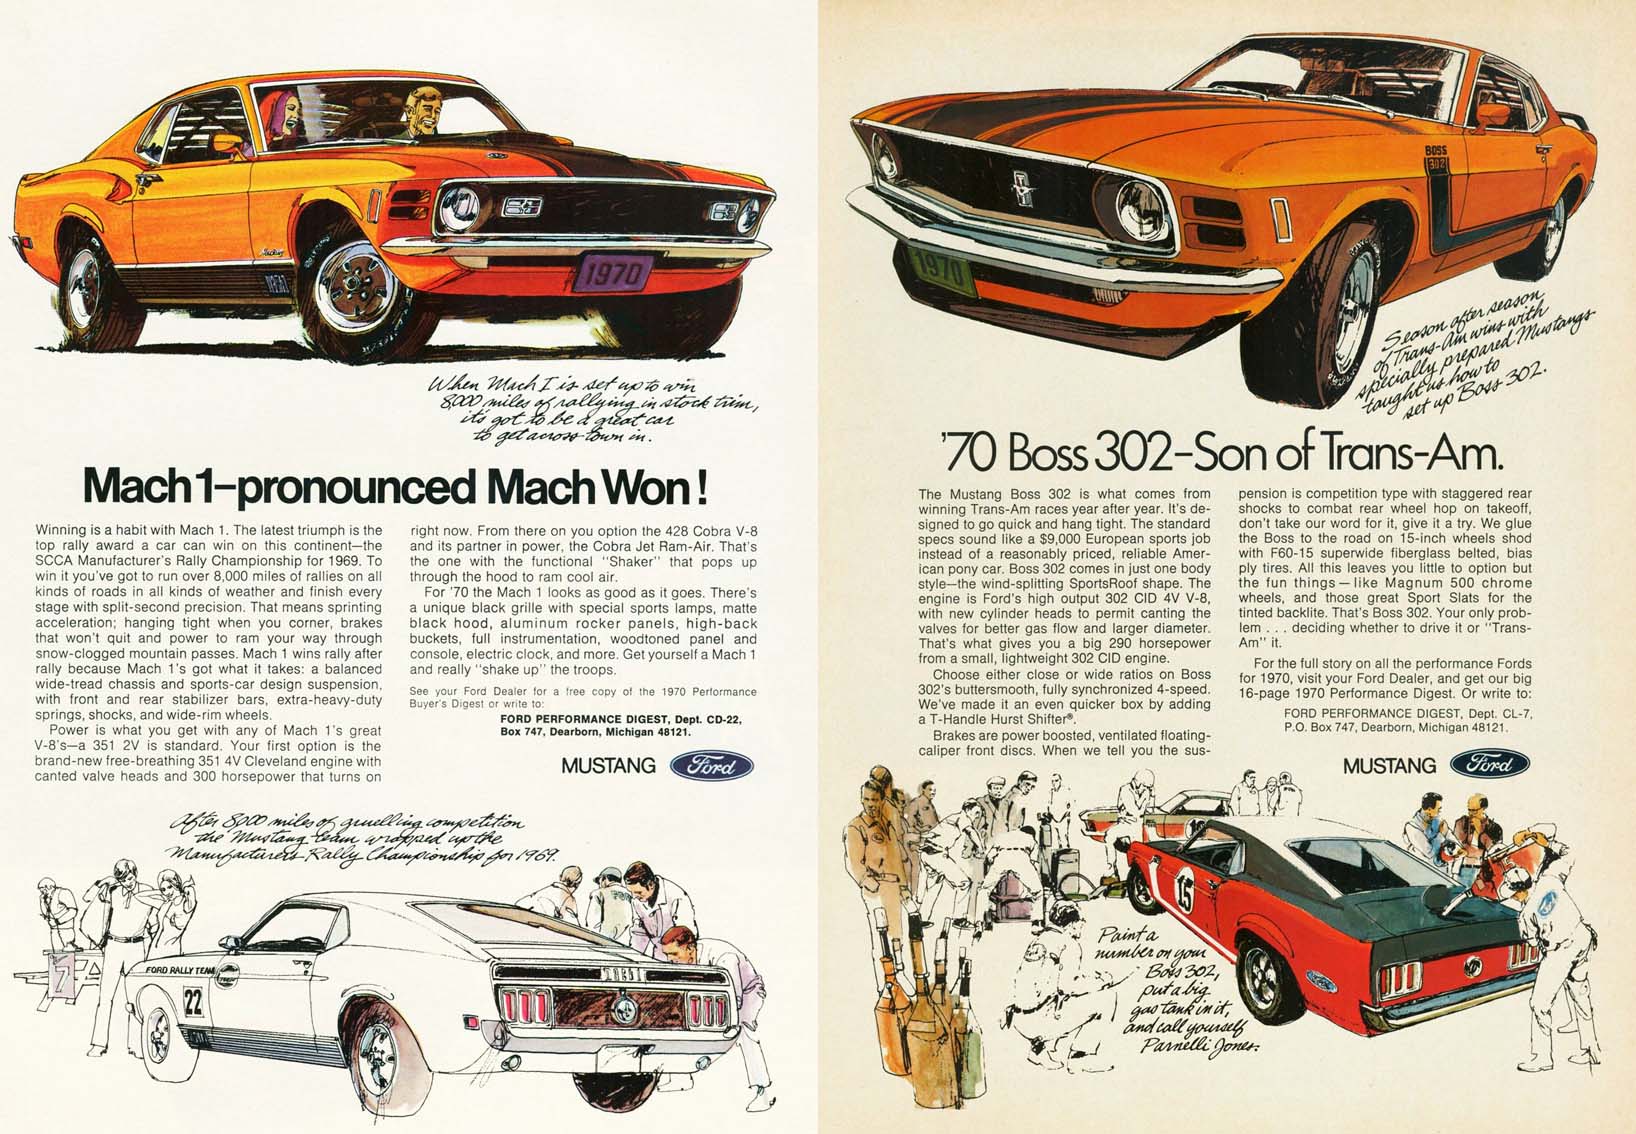 materiale ufficiale Mustang Boss 302 e Mach 1 del 1970